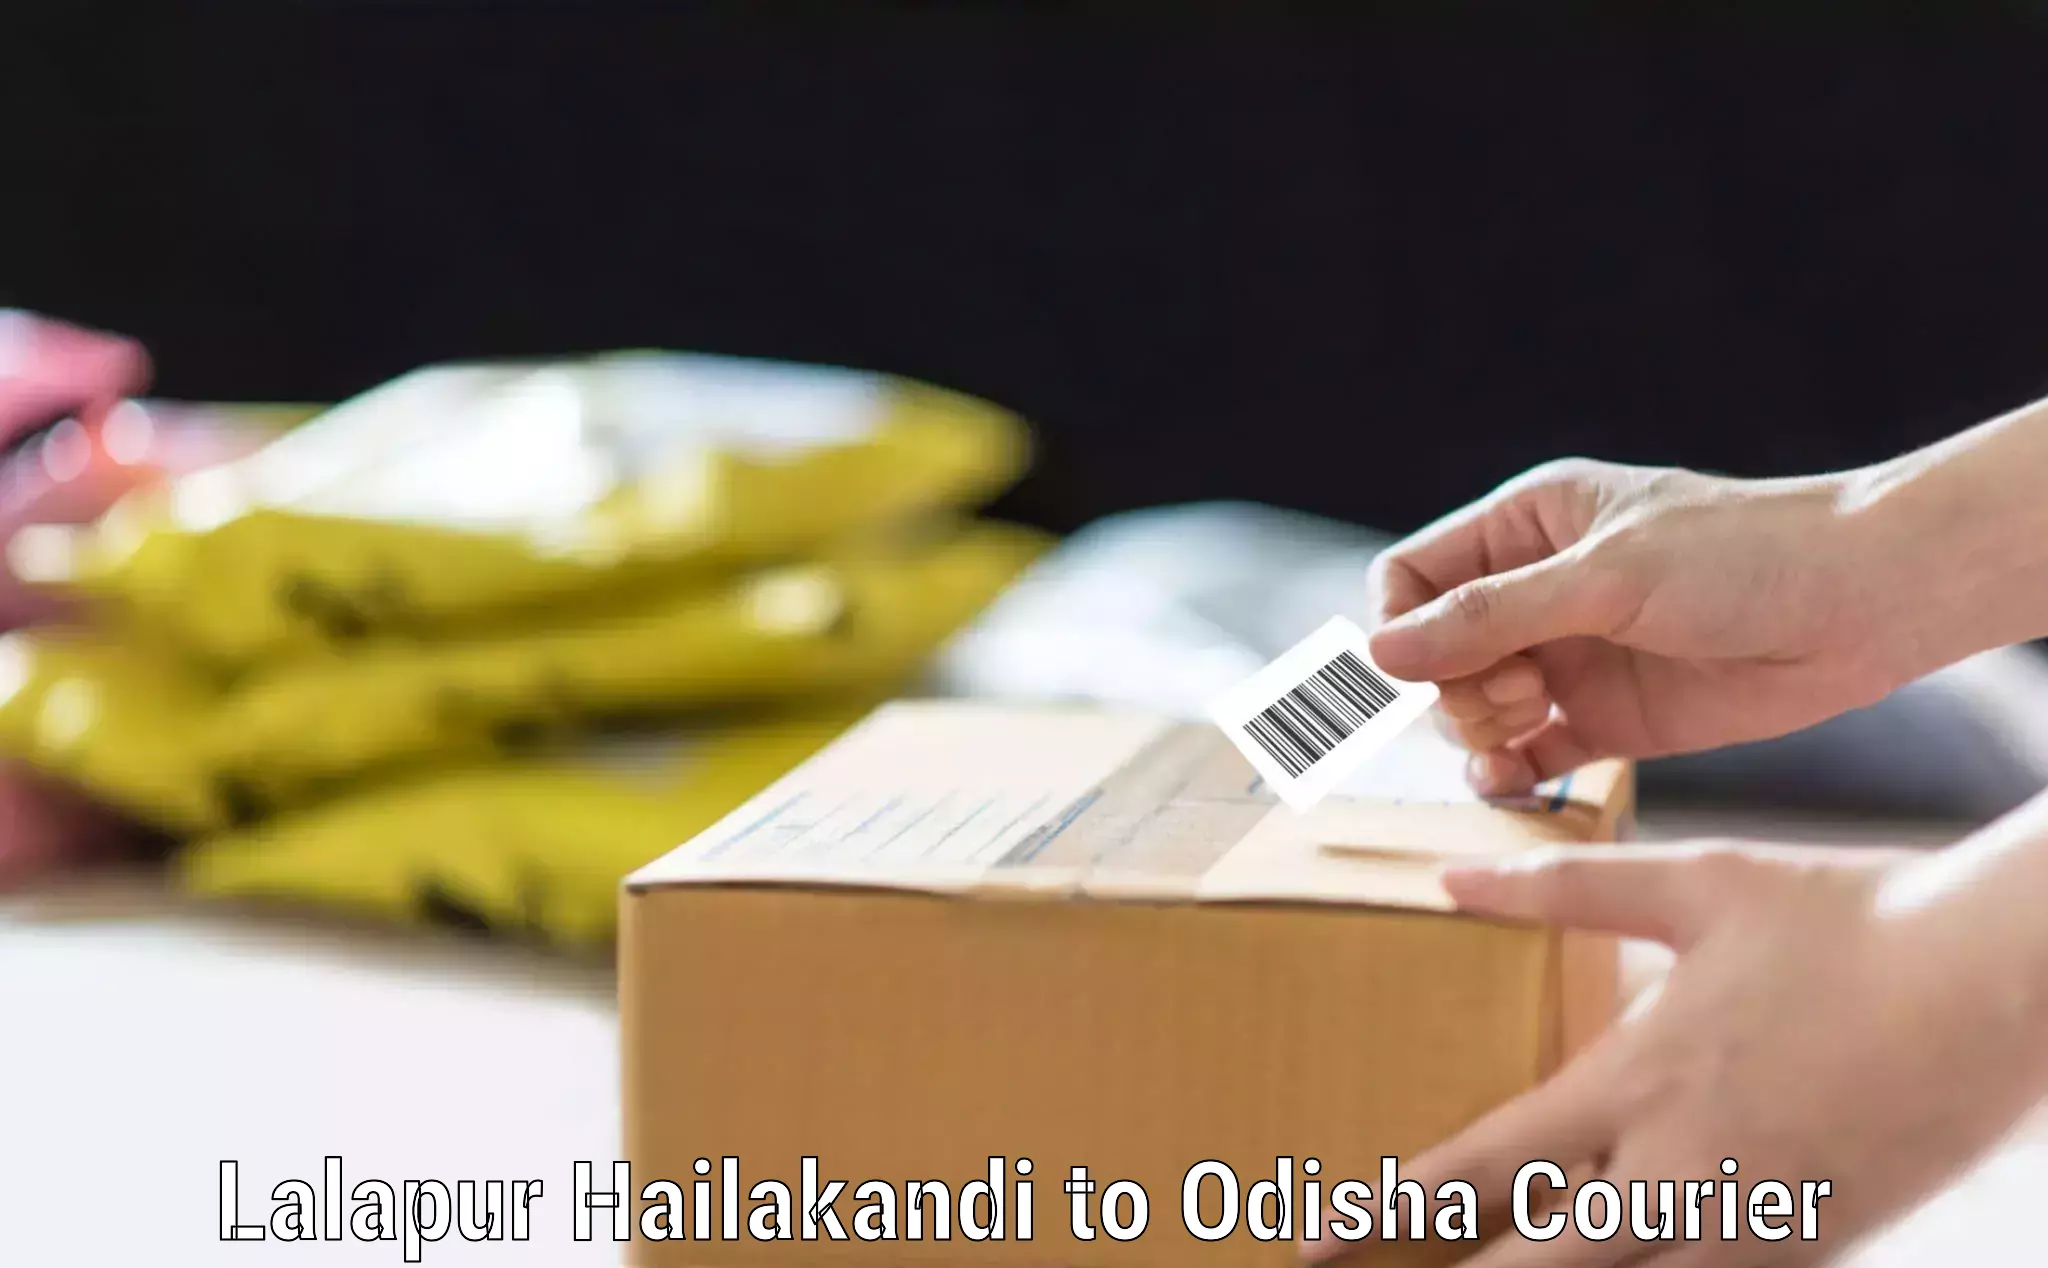 Hassle-free luggage shipping Lalapur Hailakandi to Bhadrak